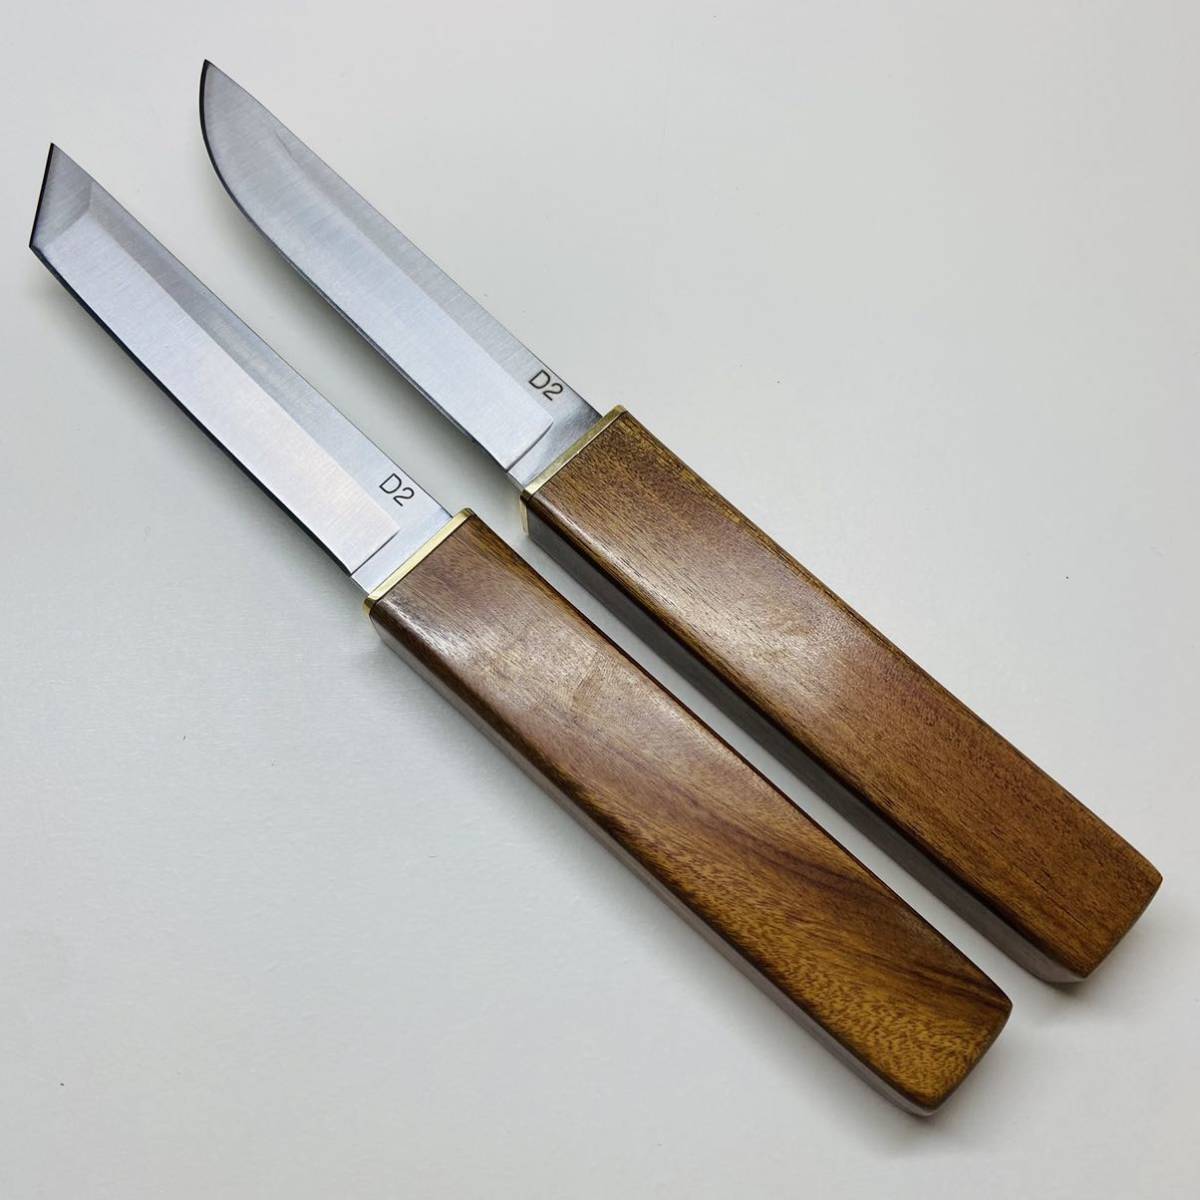 アウトドア用 高級木ナイフ 和式双刀 伝統工芸 D2鋼刃 超高品質 キャンプ 釣り 登山 携帯 259g_画像4